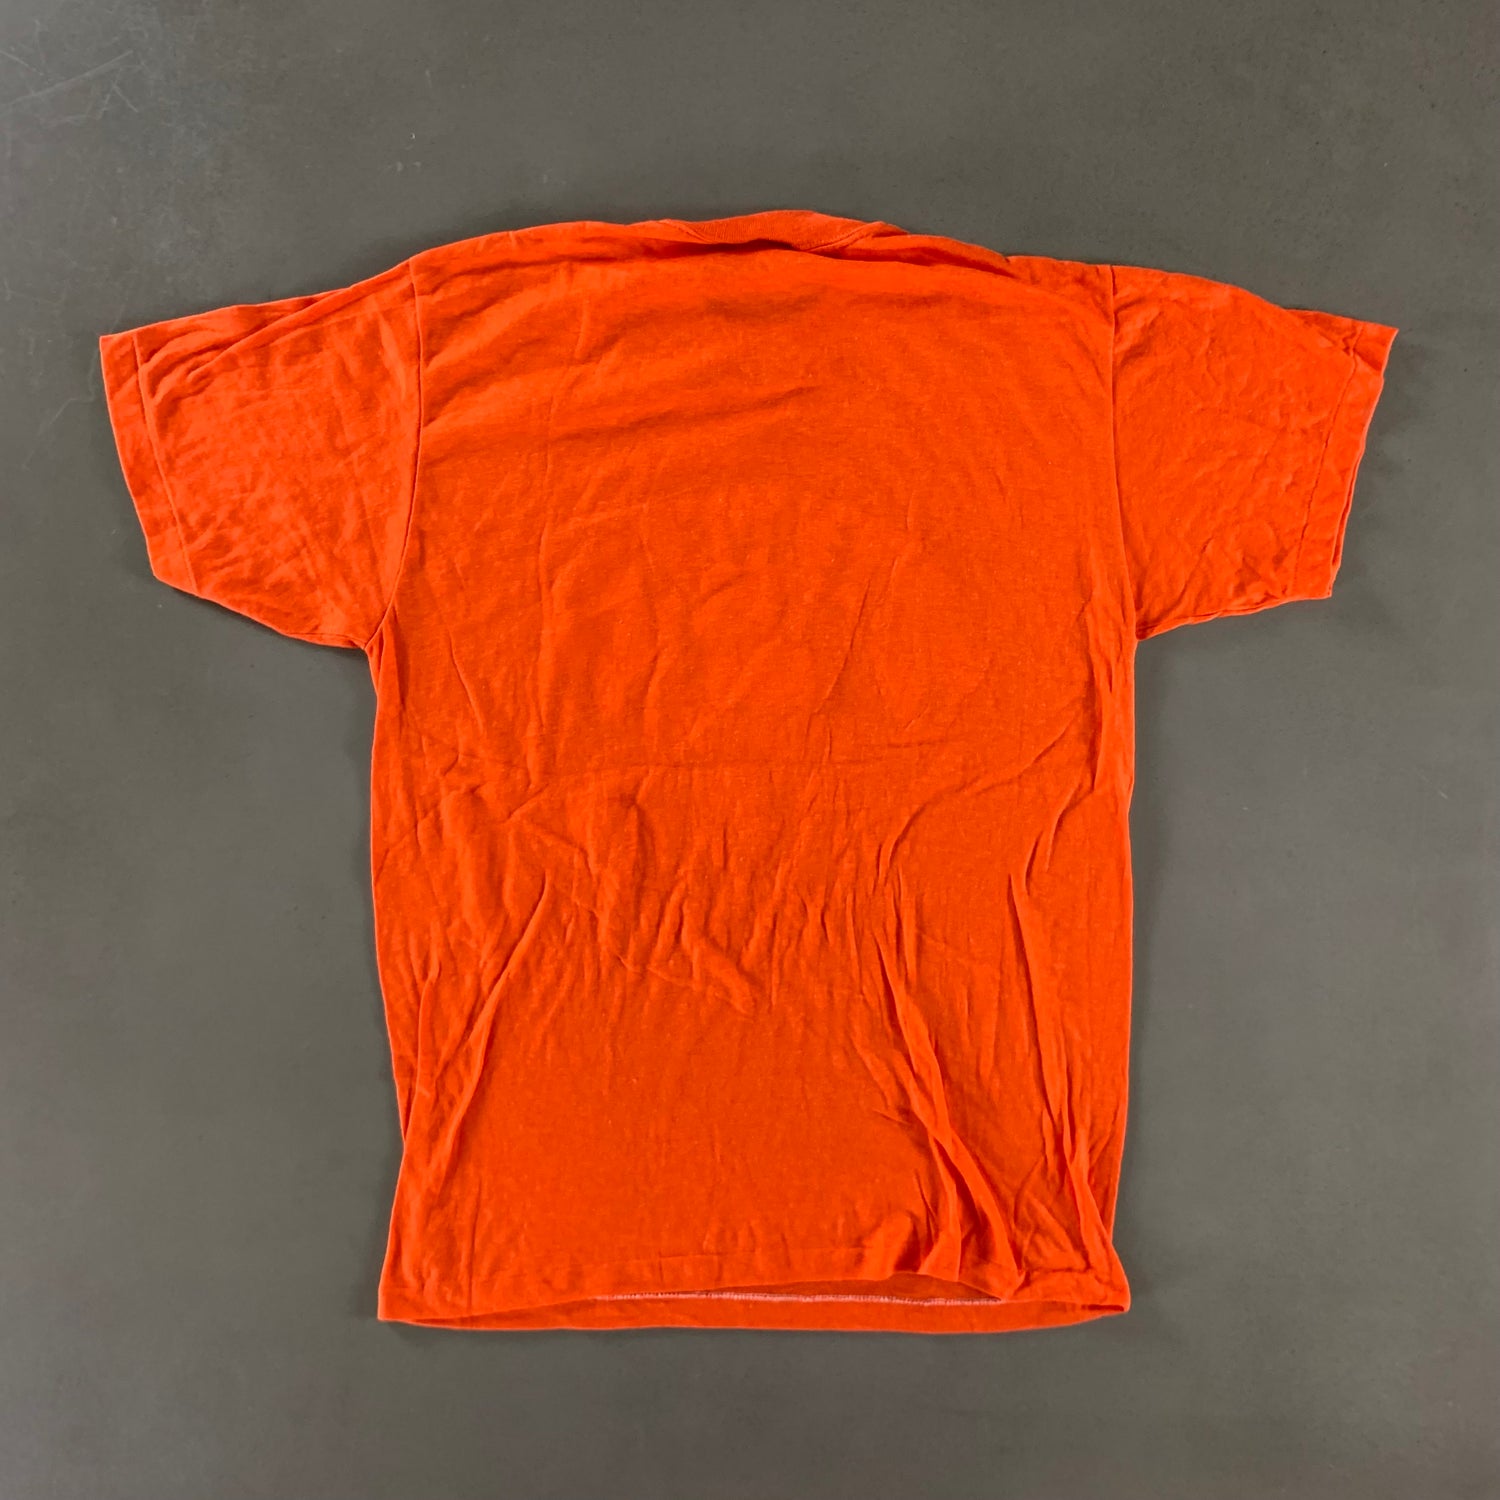 Vintage 1987 Denver Broncos T-shirt size Large